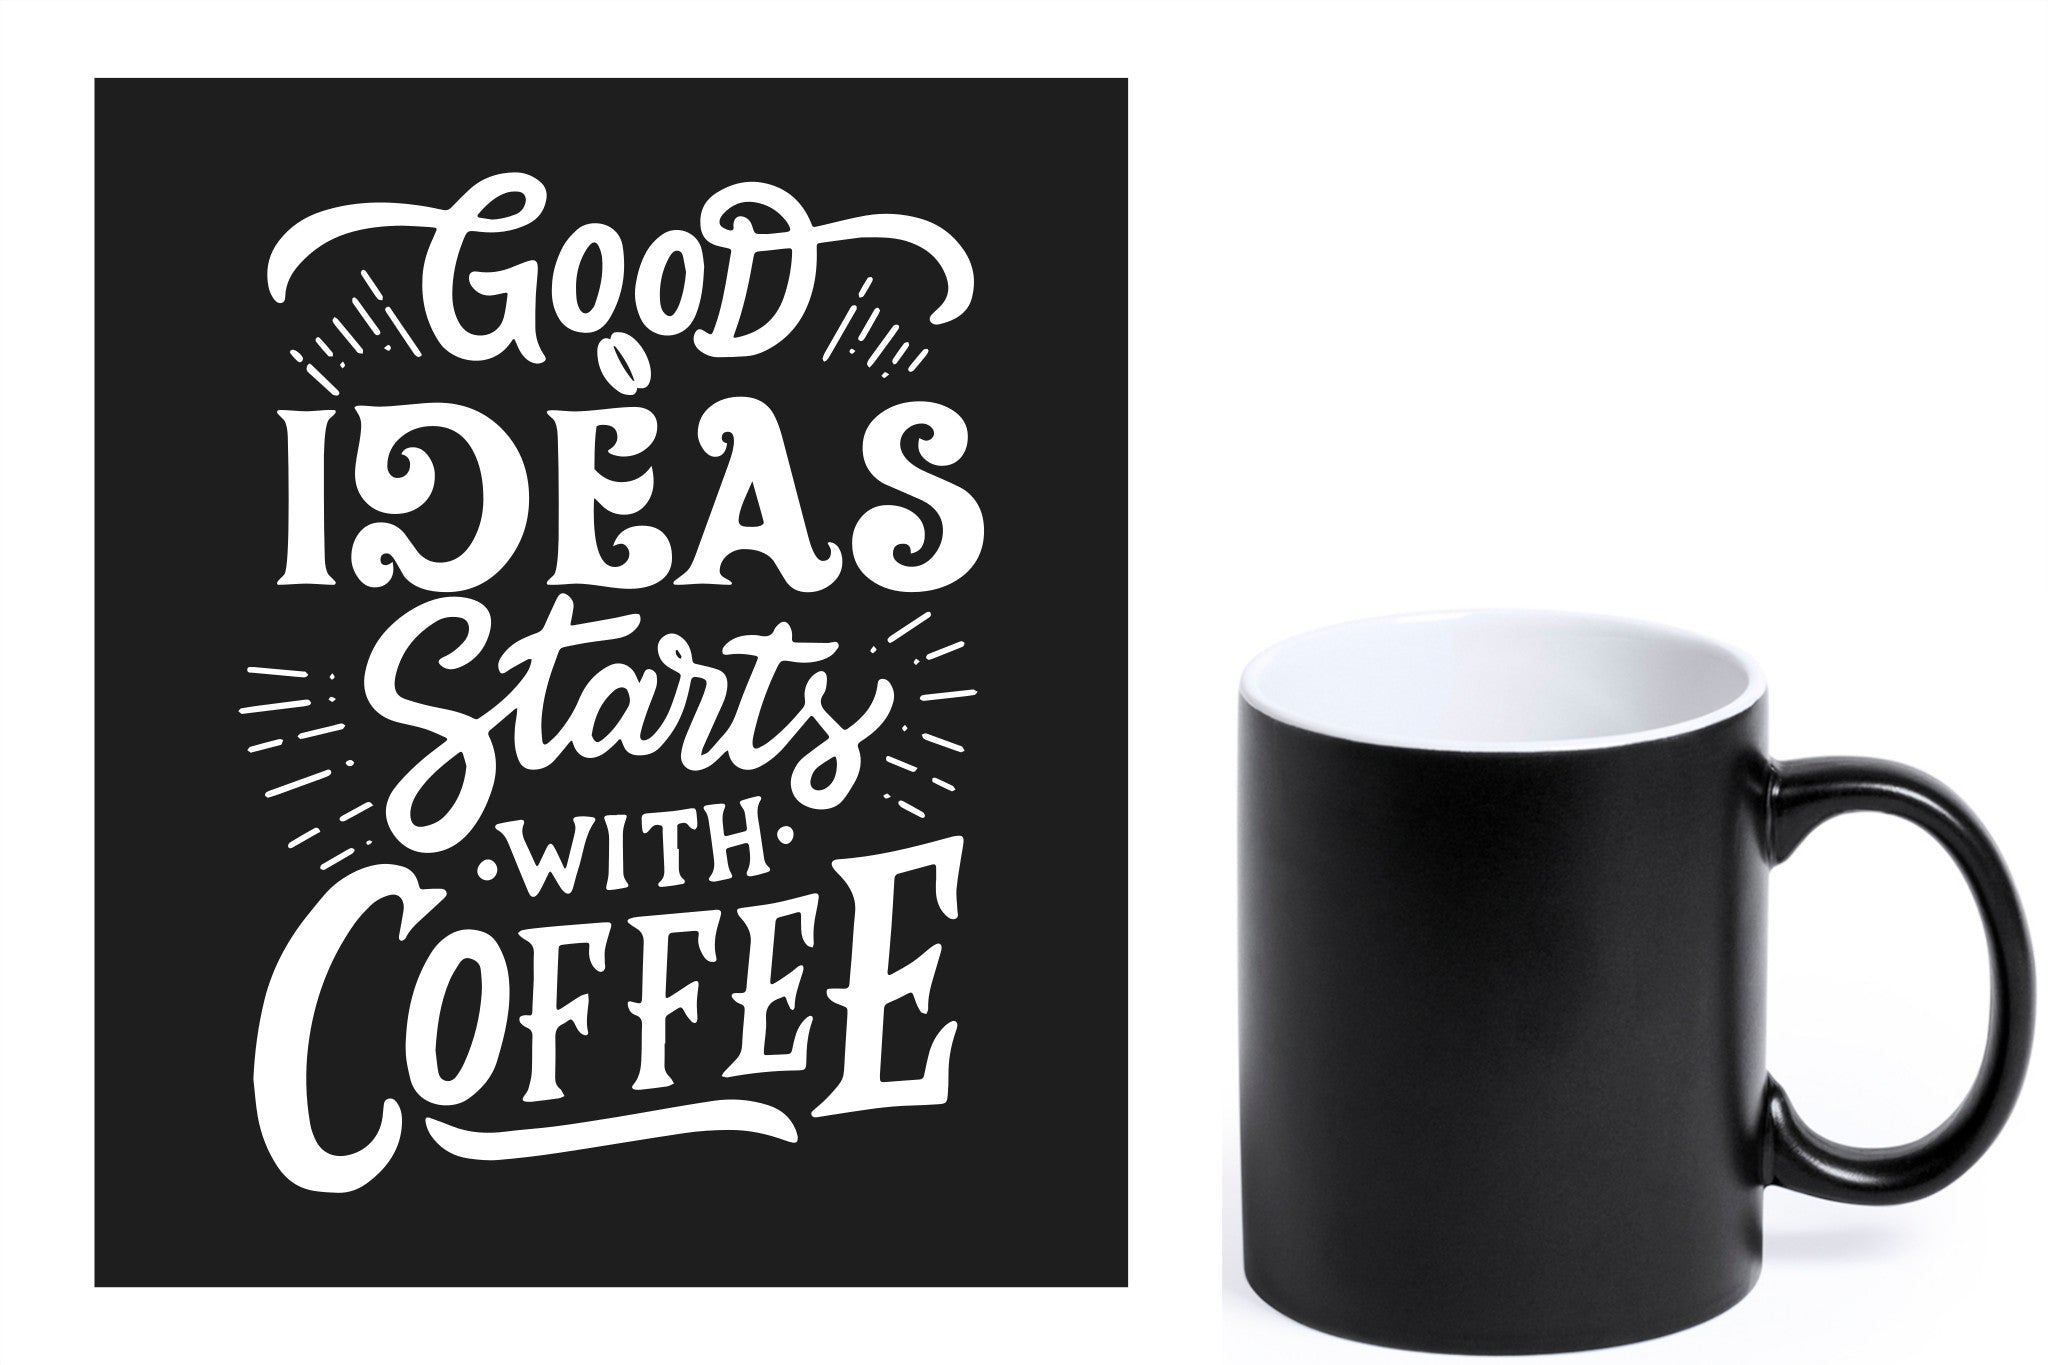 zwarte keramische mok met witte gravure  'Good ideas starts with coffee'.